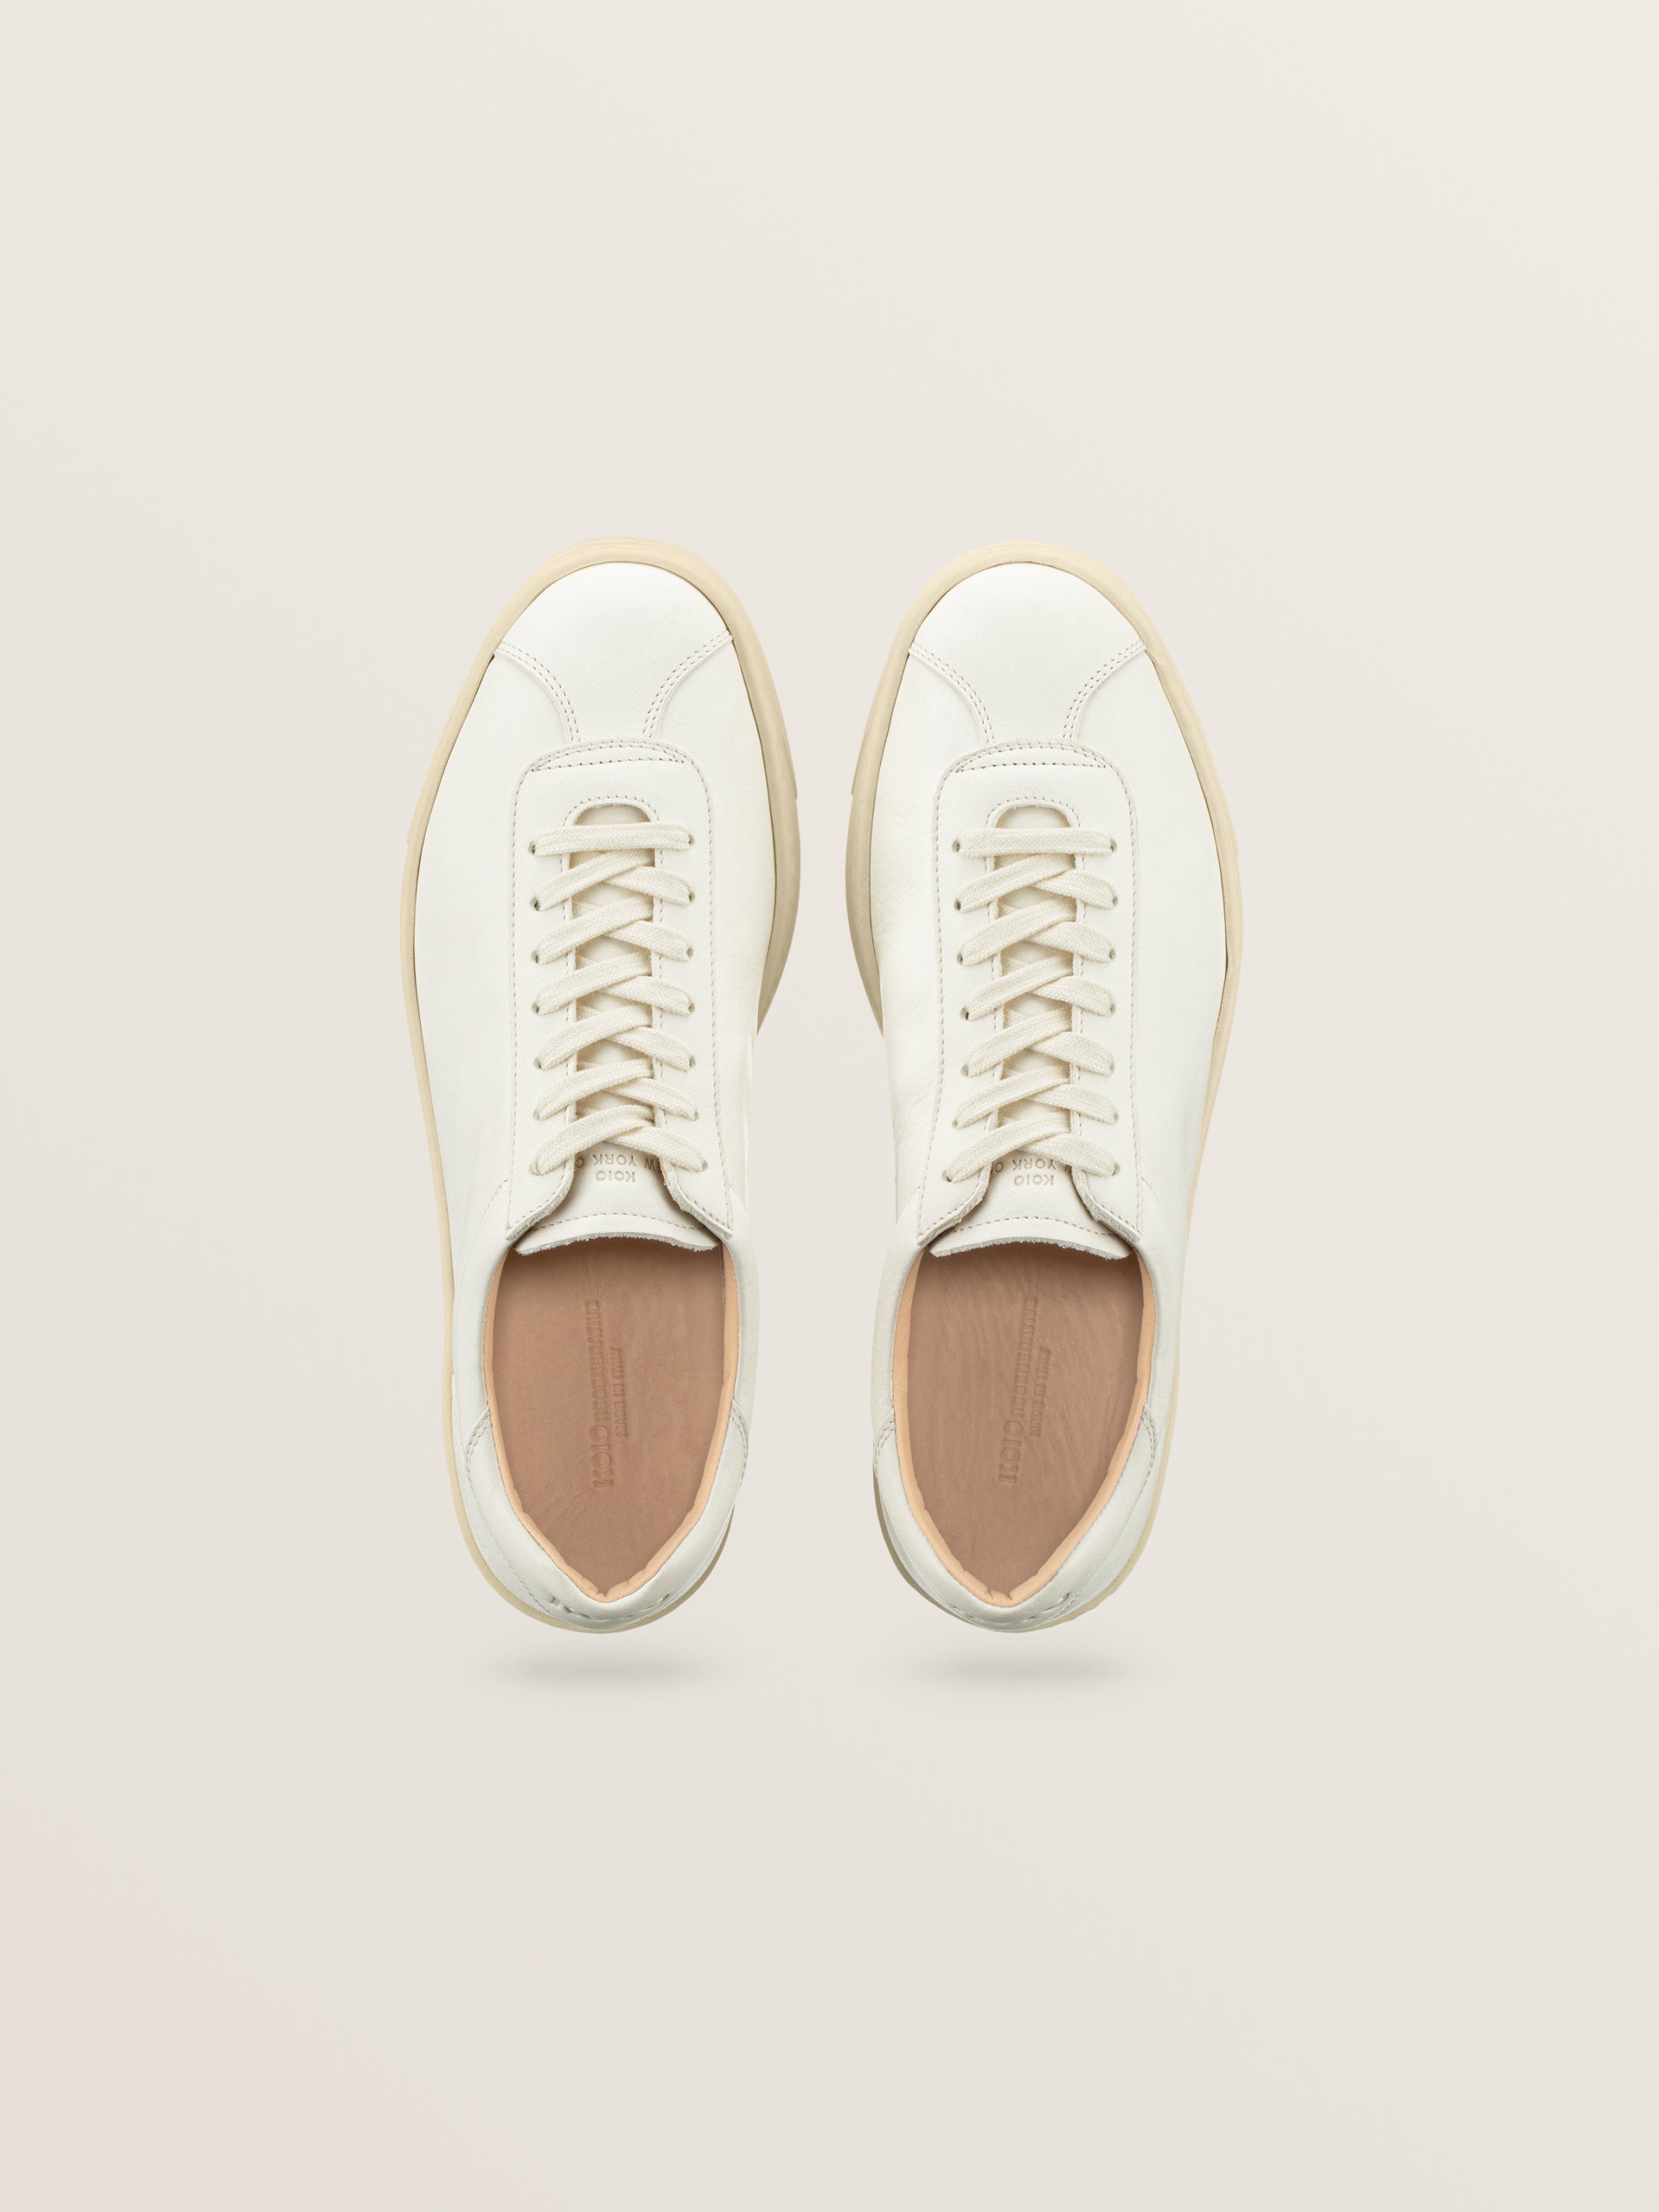 Men’s White Leather Sneakers | Mello in Summit | Koio – KOIO